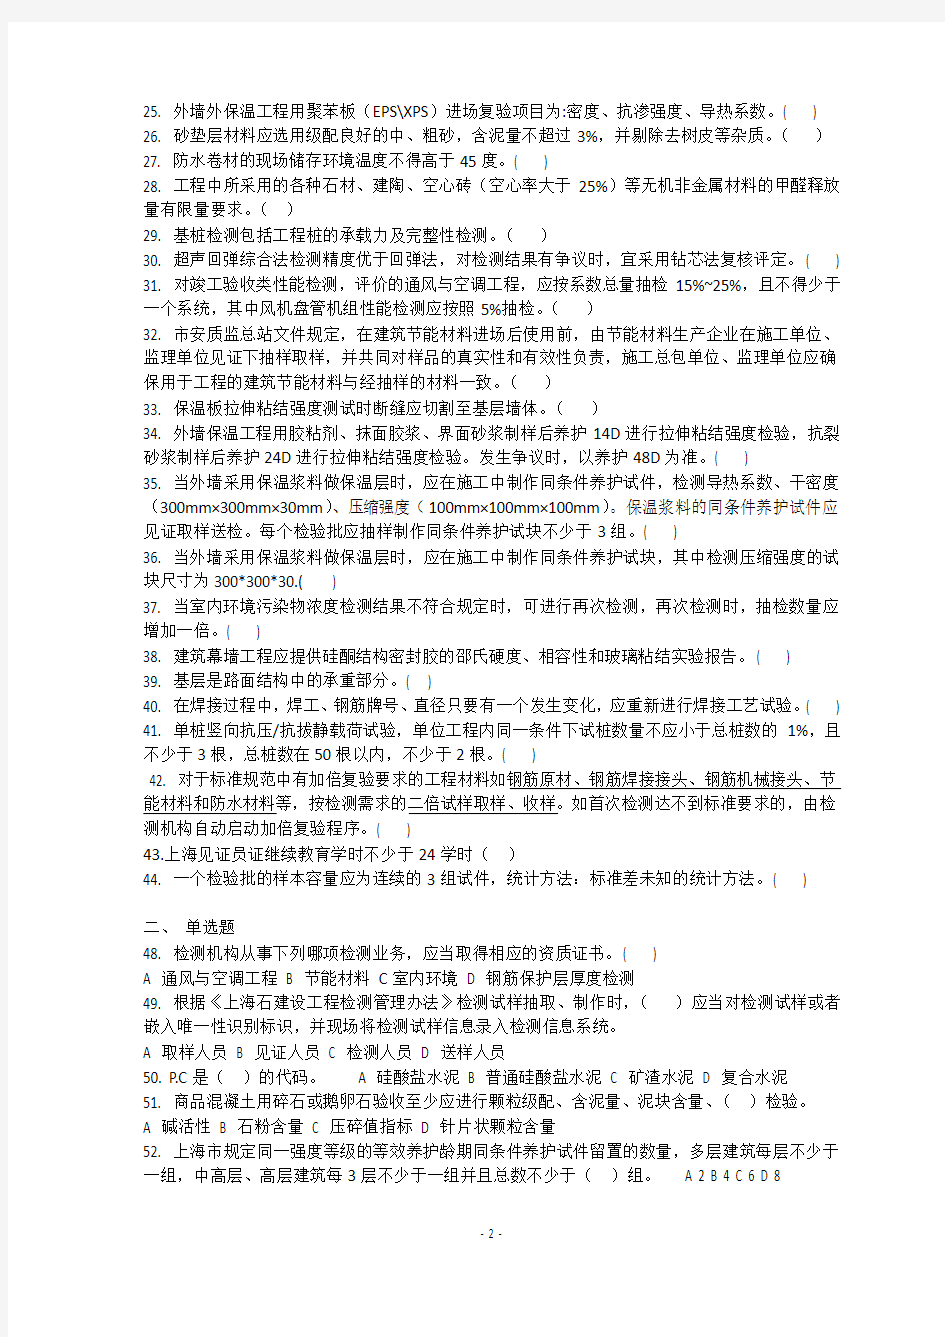 2015年上海见证员考试试题(答案在最后)